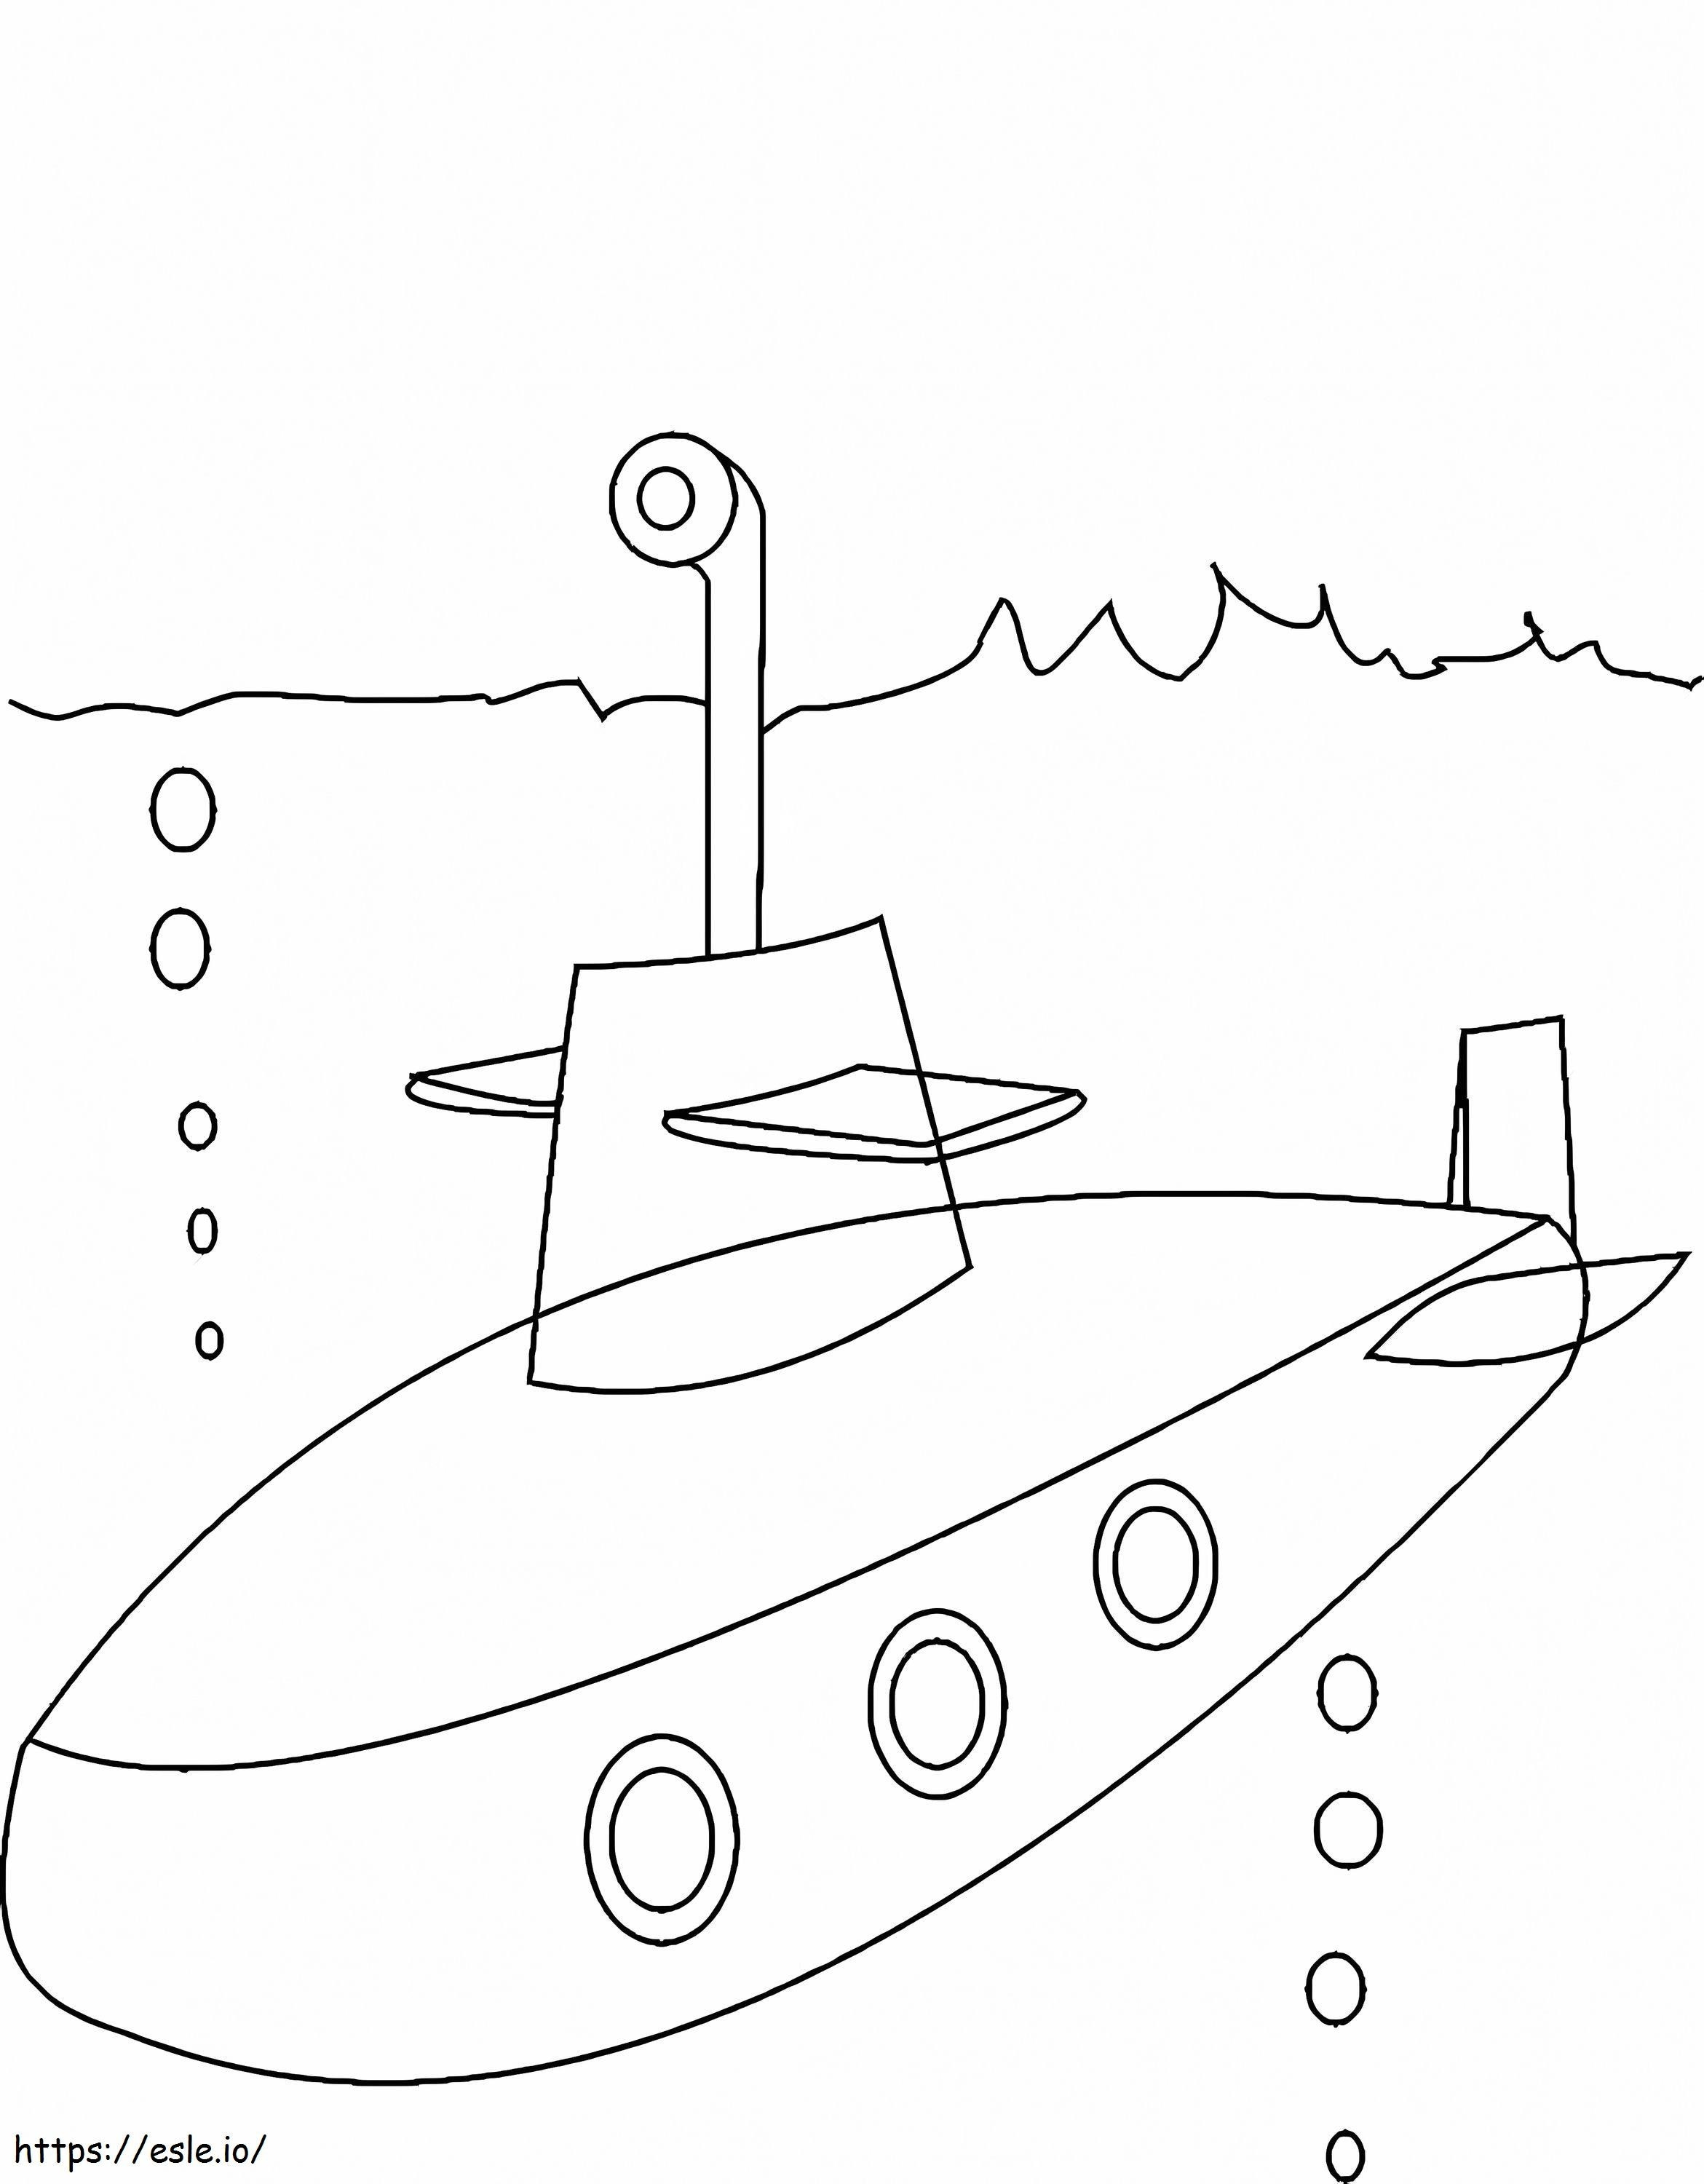 Beeindruckende U-Boote ausmalbilder